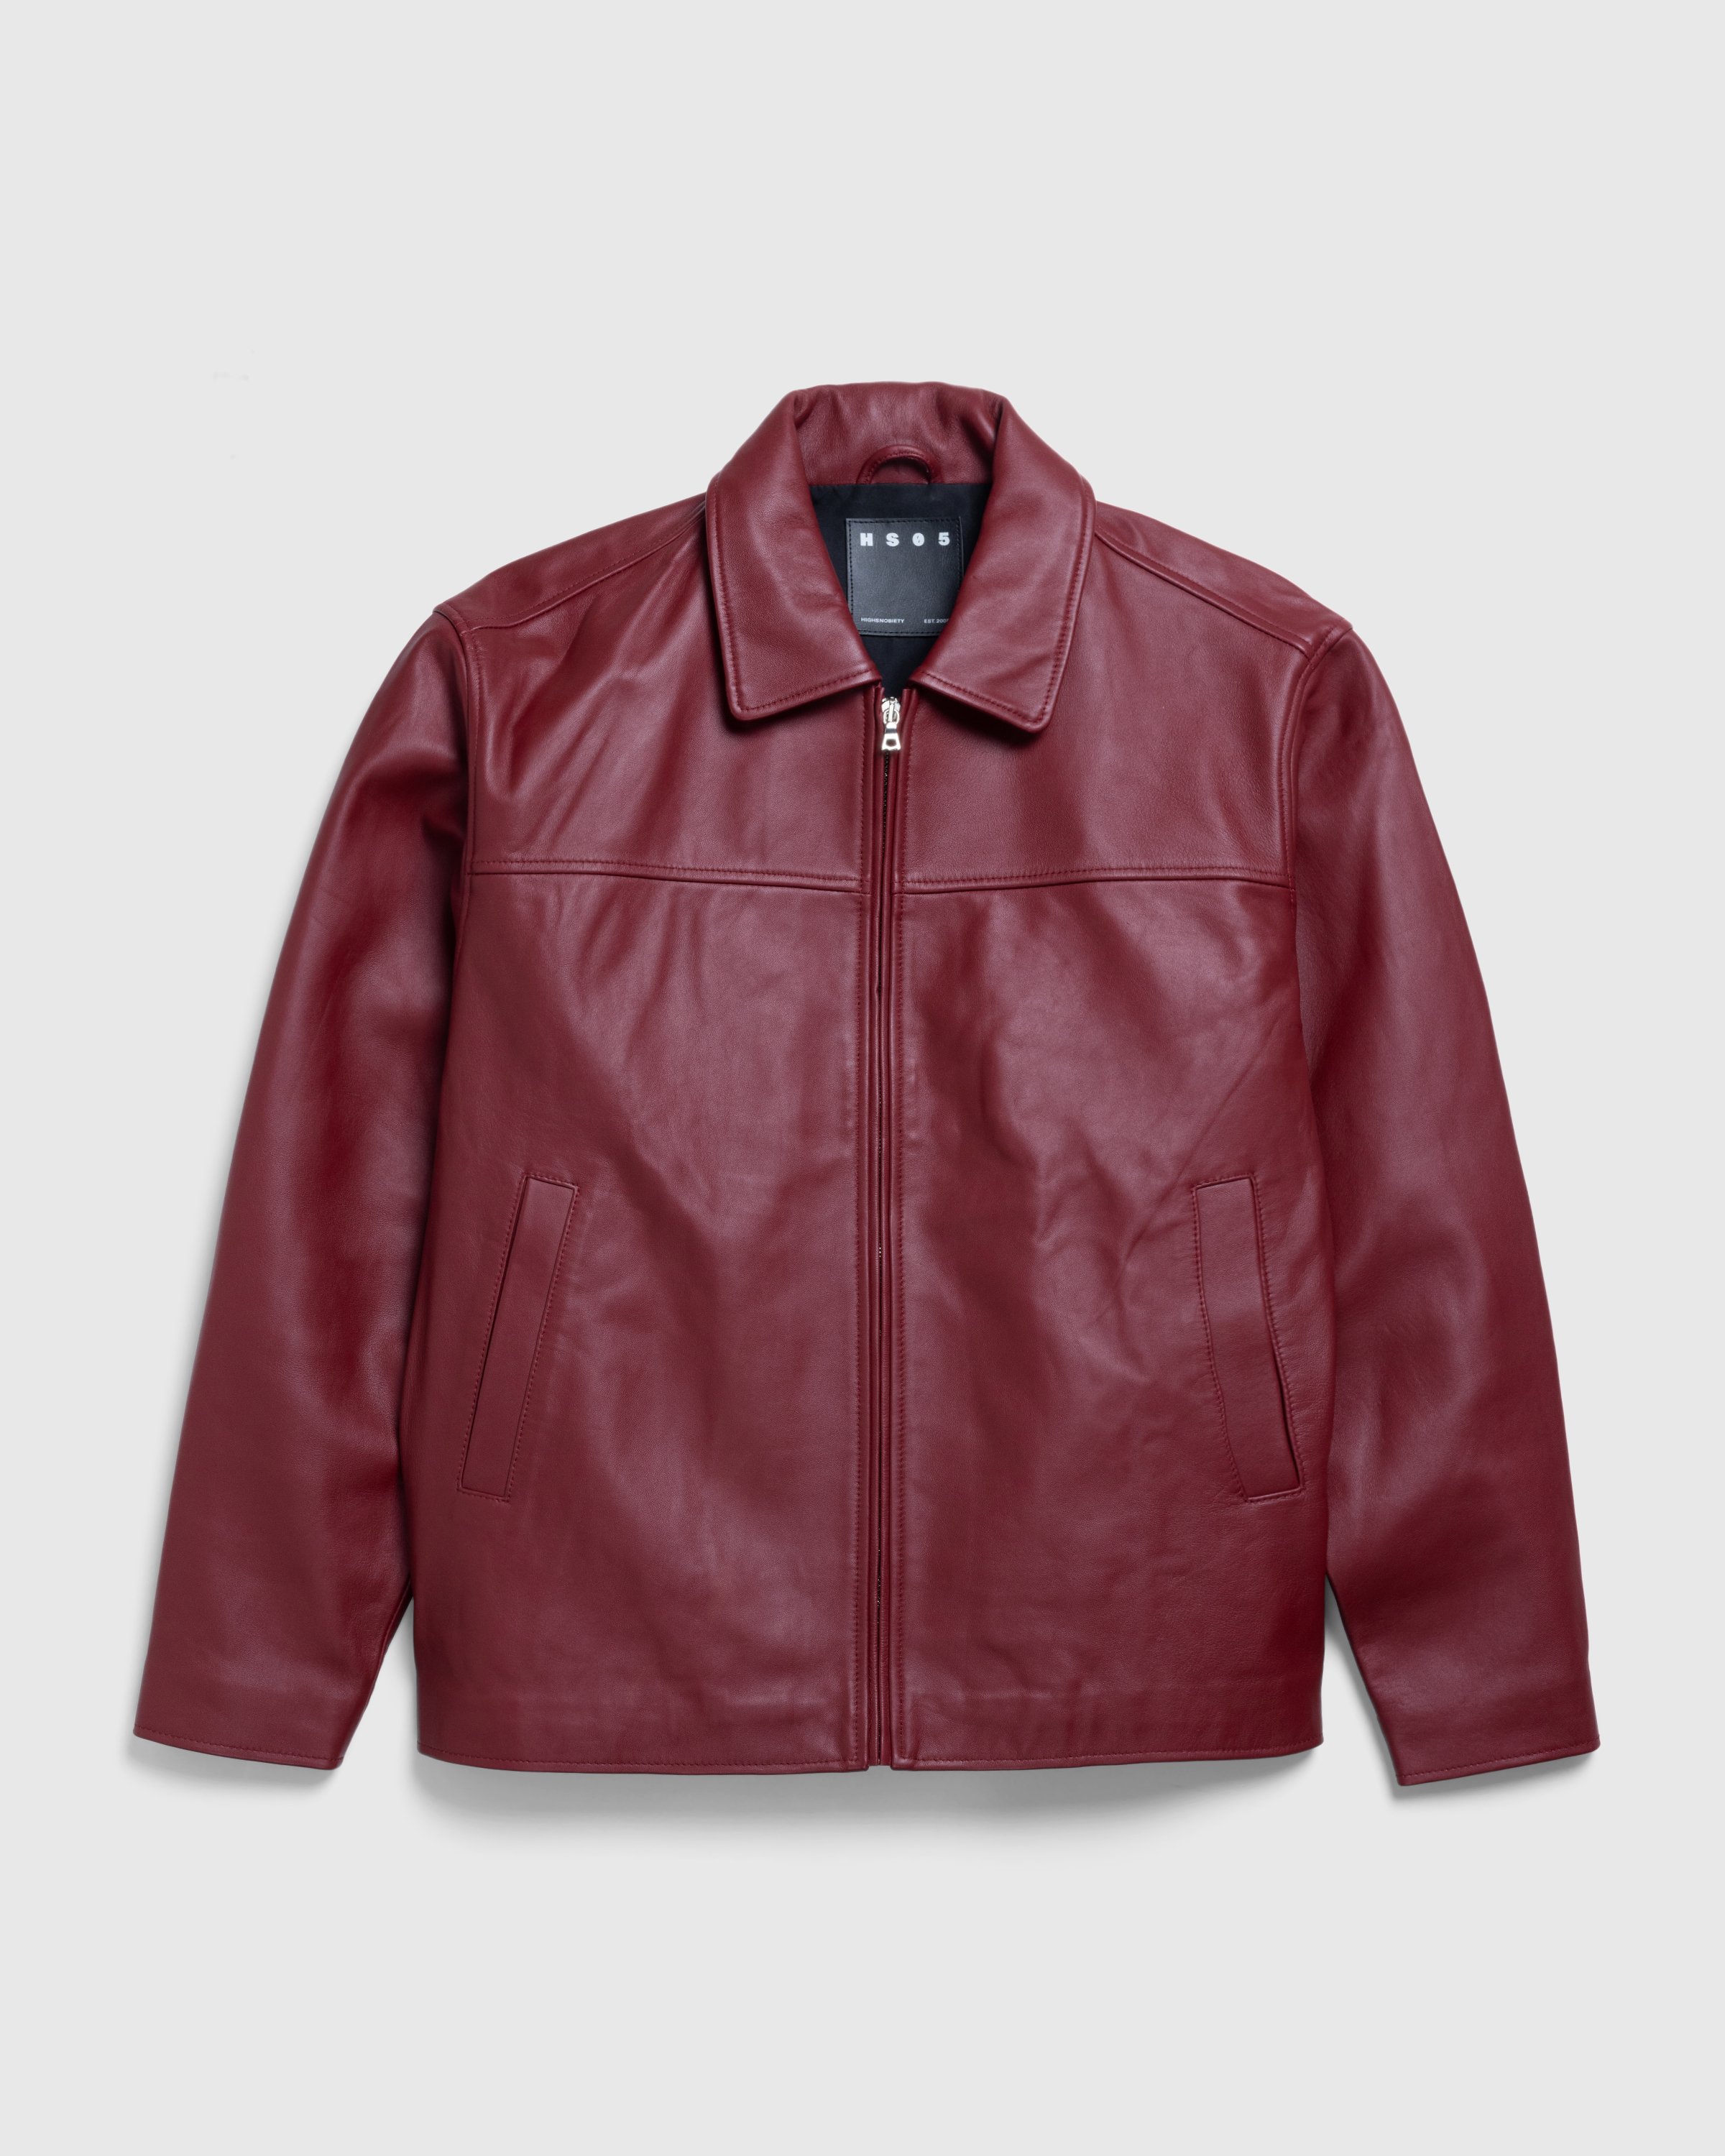 Highsnobiety HS05 – Napa Leather Jacket Burgundy | Highsnobiety Shop